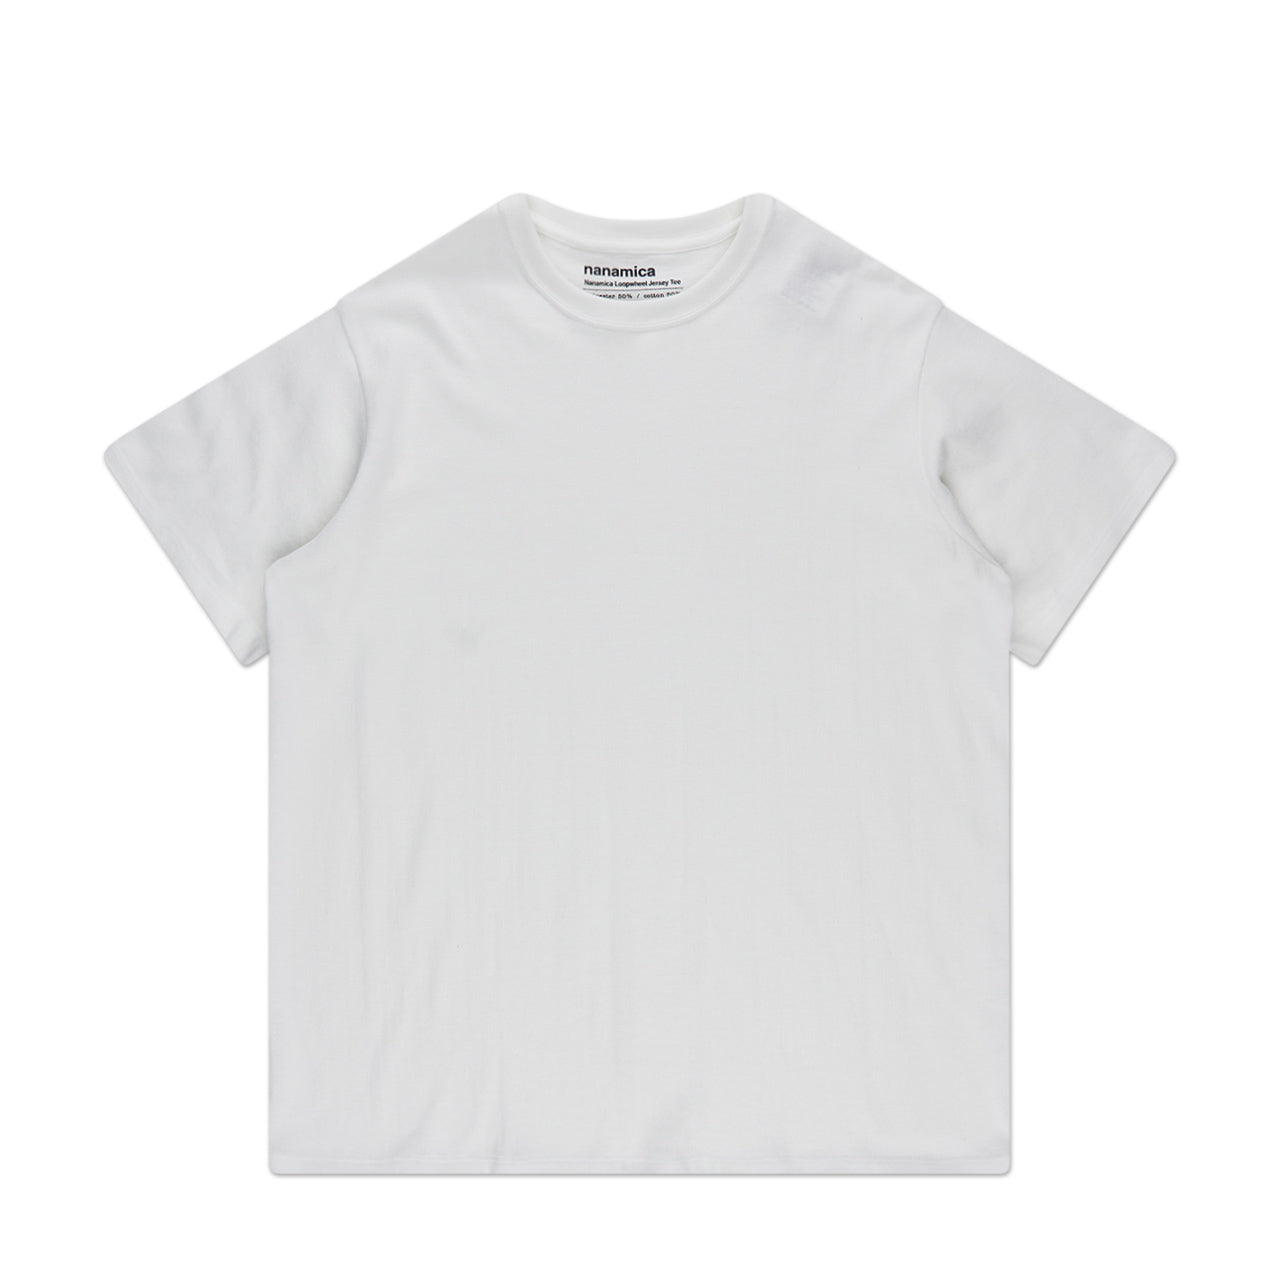 nanamica loopwheel coolmax jersey t-shirt (white)